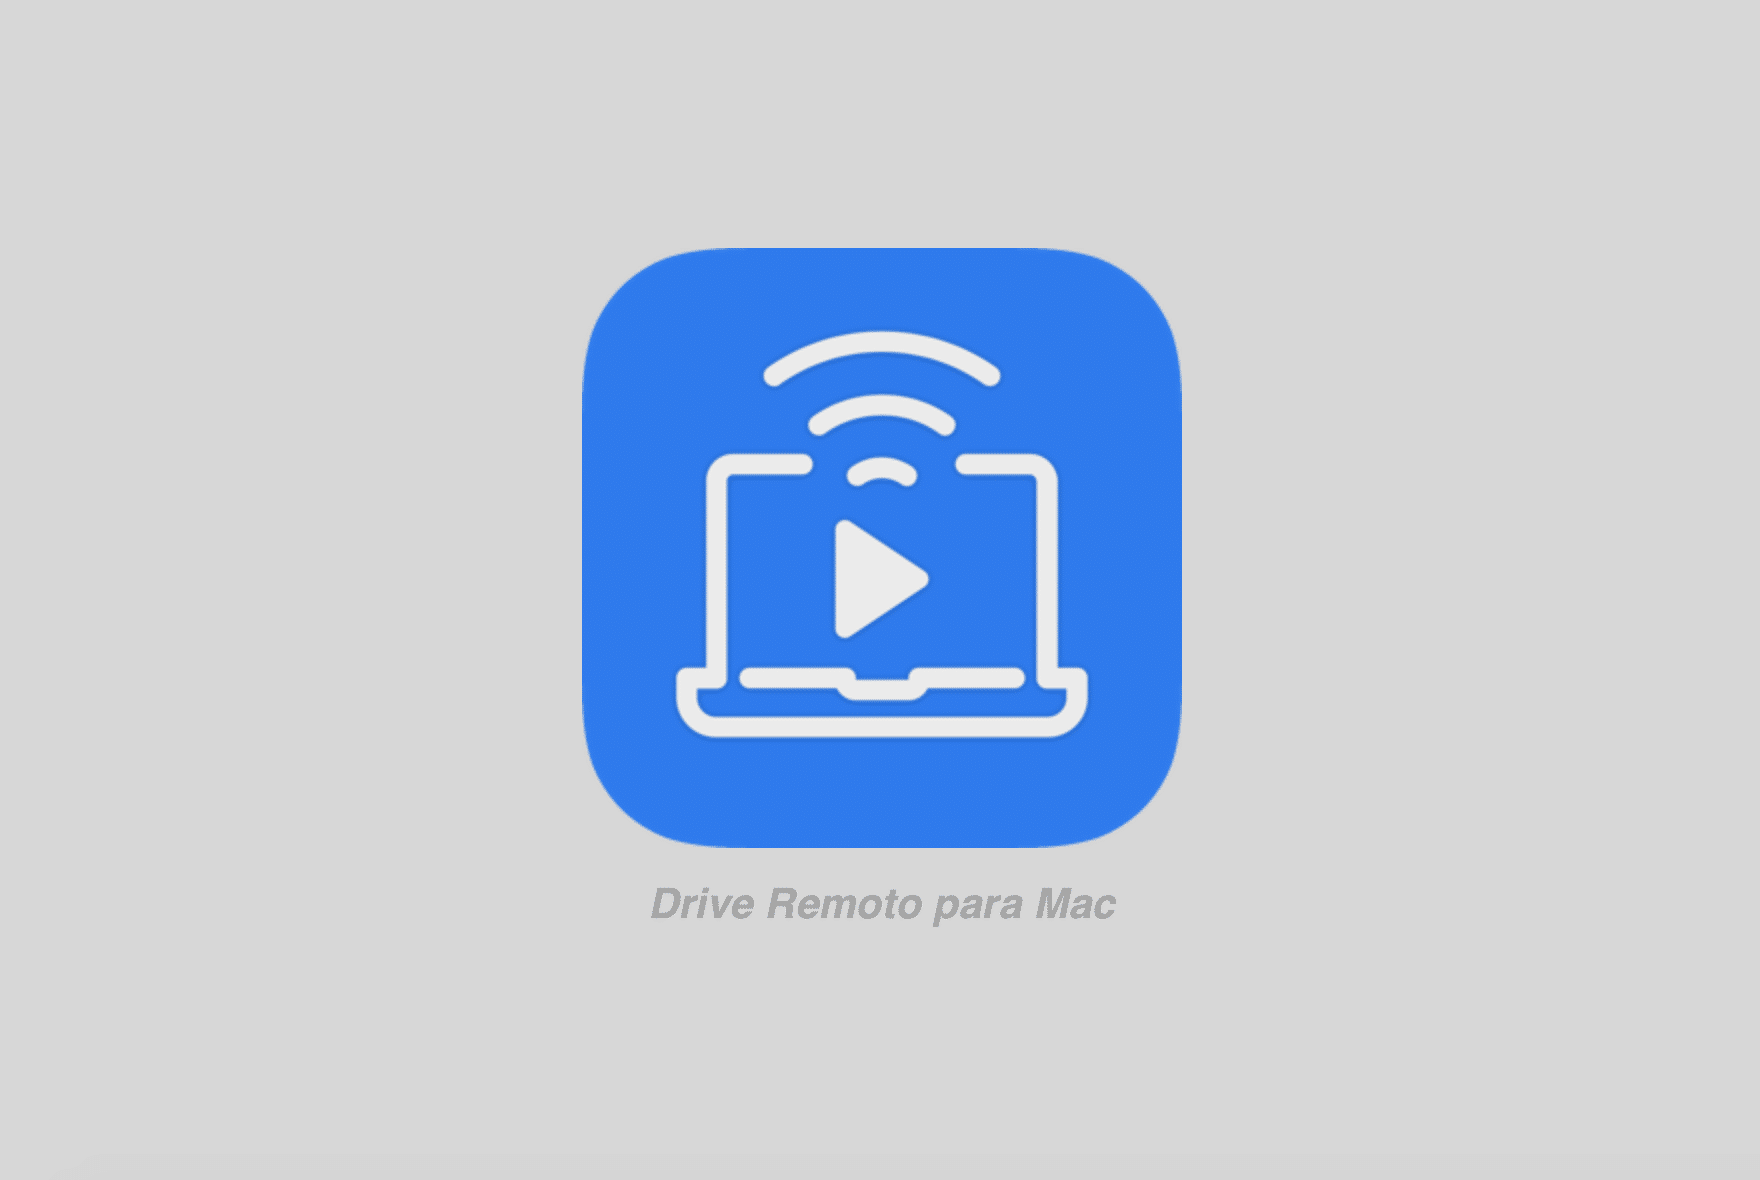 Remote Drive for Mac - Pro